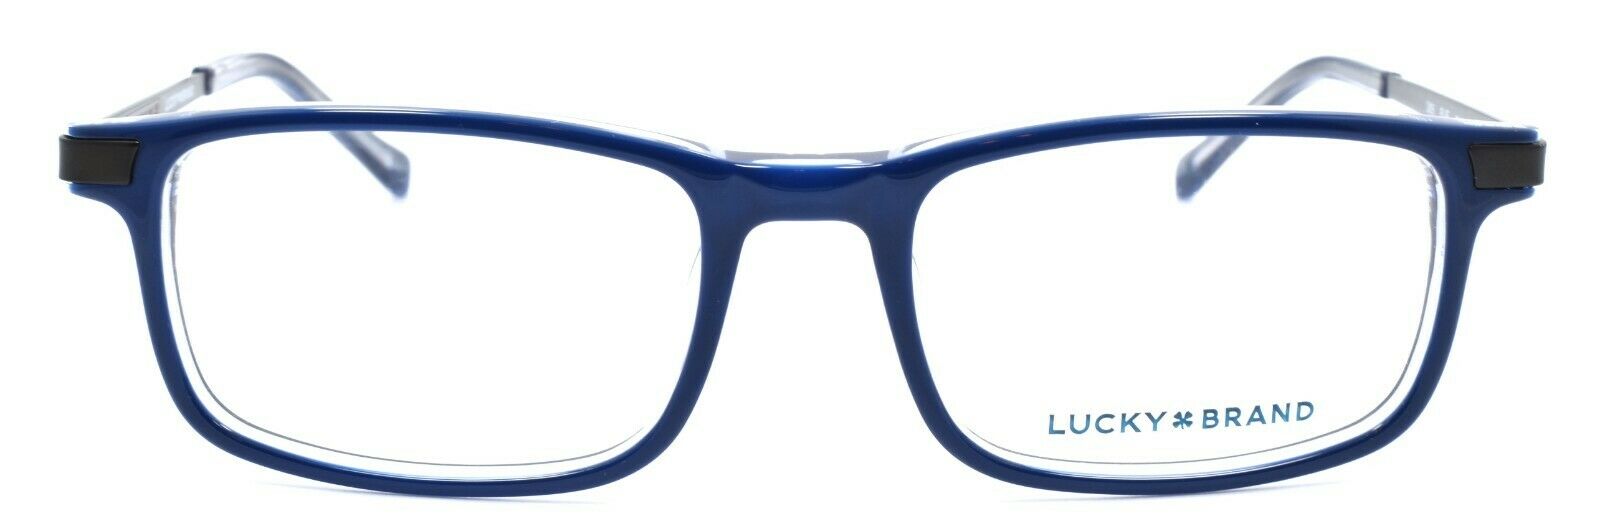 2-LUCKY BRAND D805 Kids Eyeglasses Frames 48-17-130 Blue-751286295351-IKSpecs